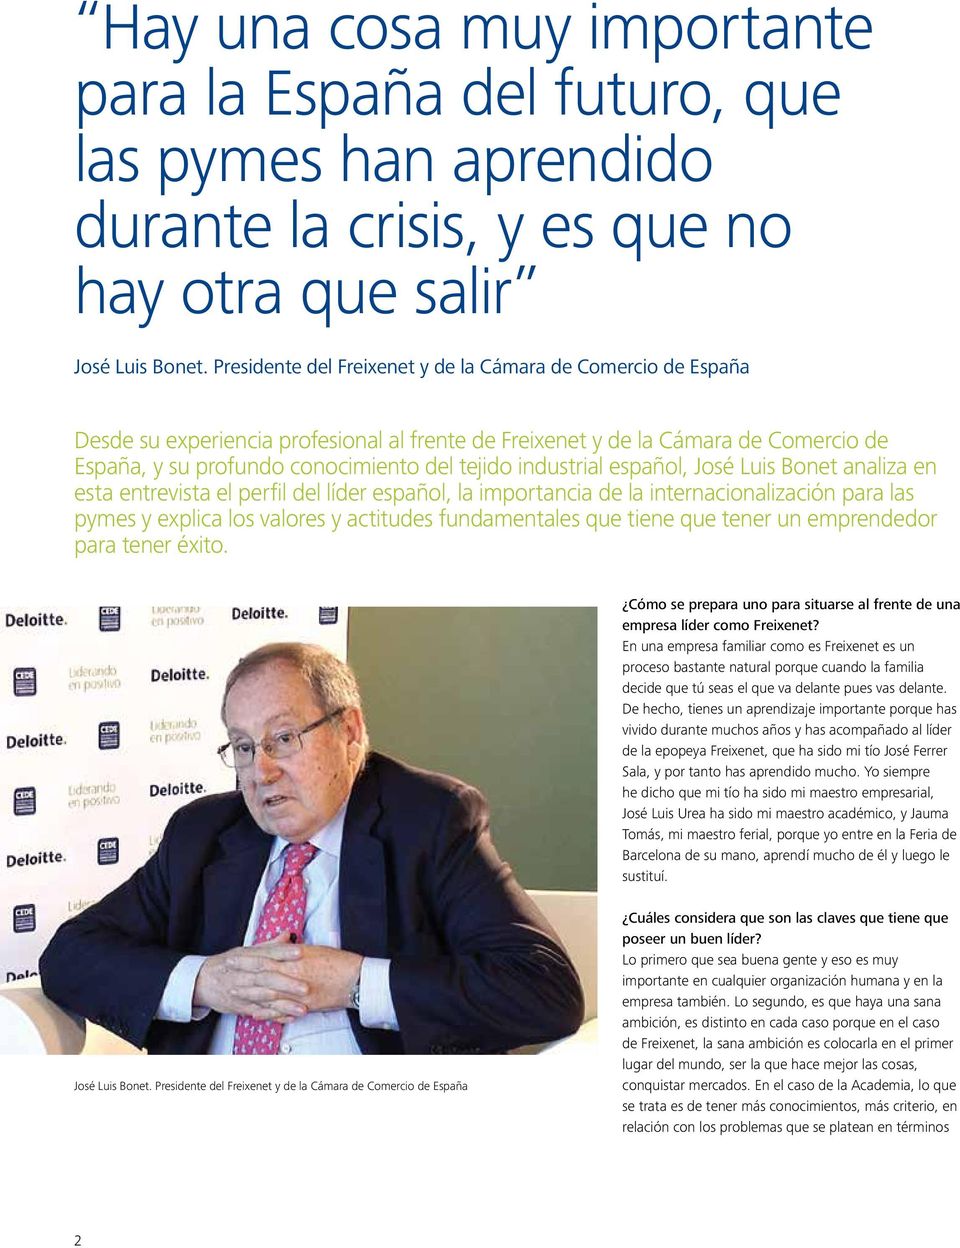 industrial español, José Luis Bonet analiza en esta entrevista el perfil del líder español, la importancia de la internacionalización para las pymes y explica los valores y actitudes fundamentales